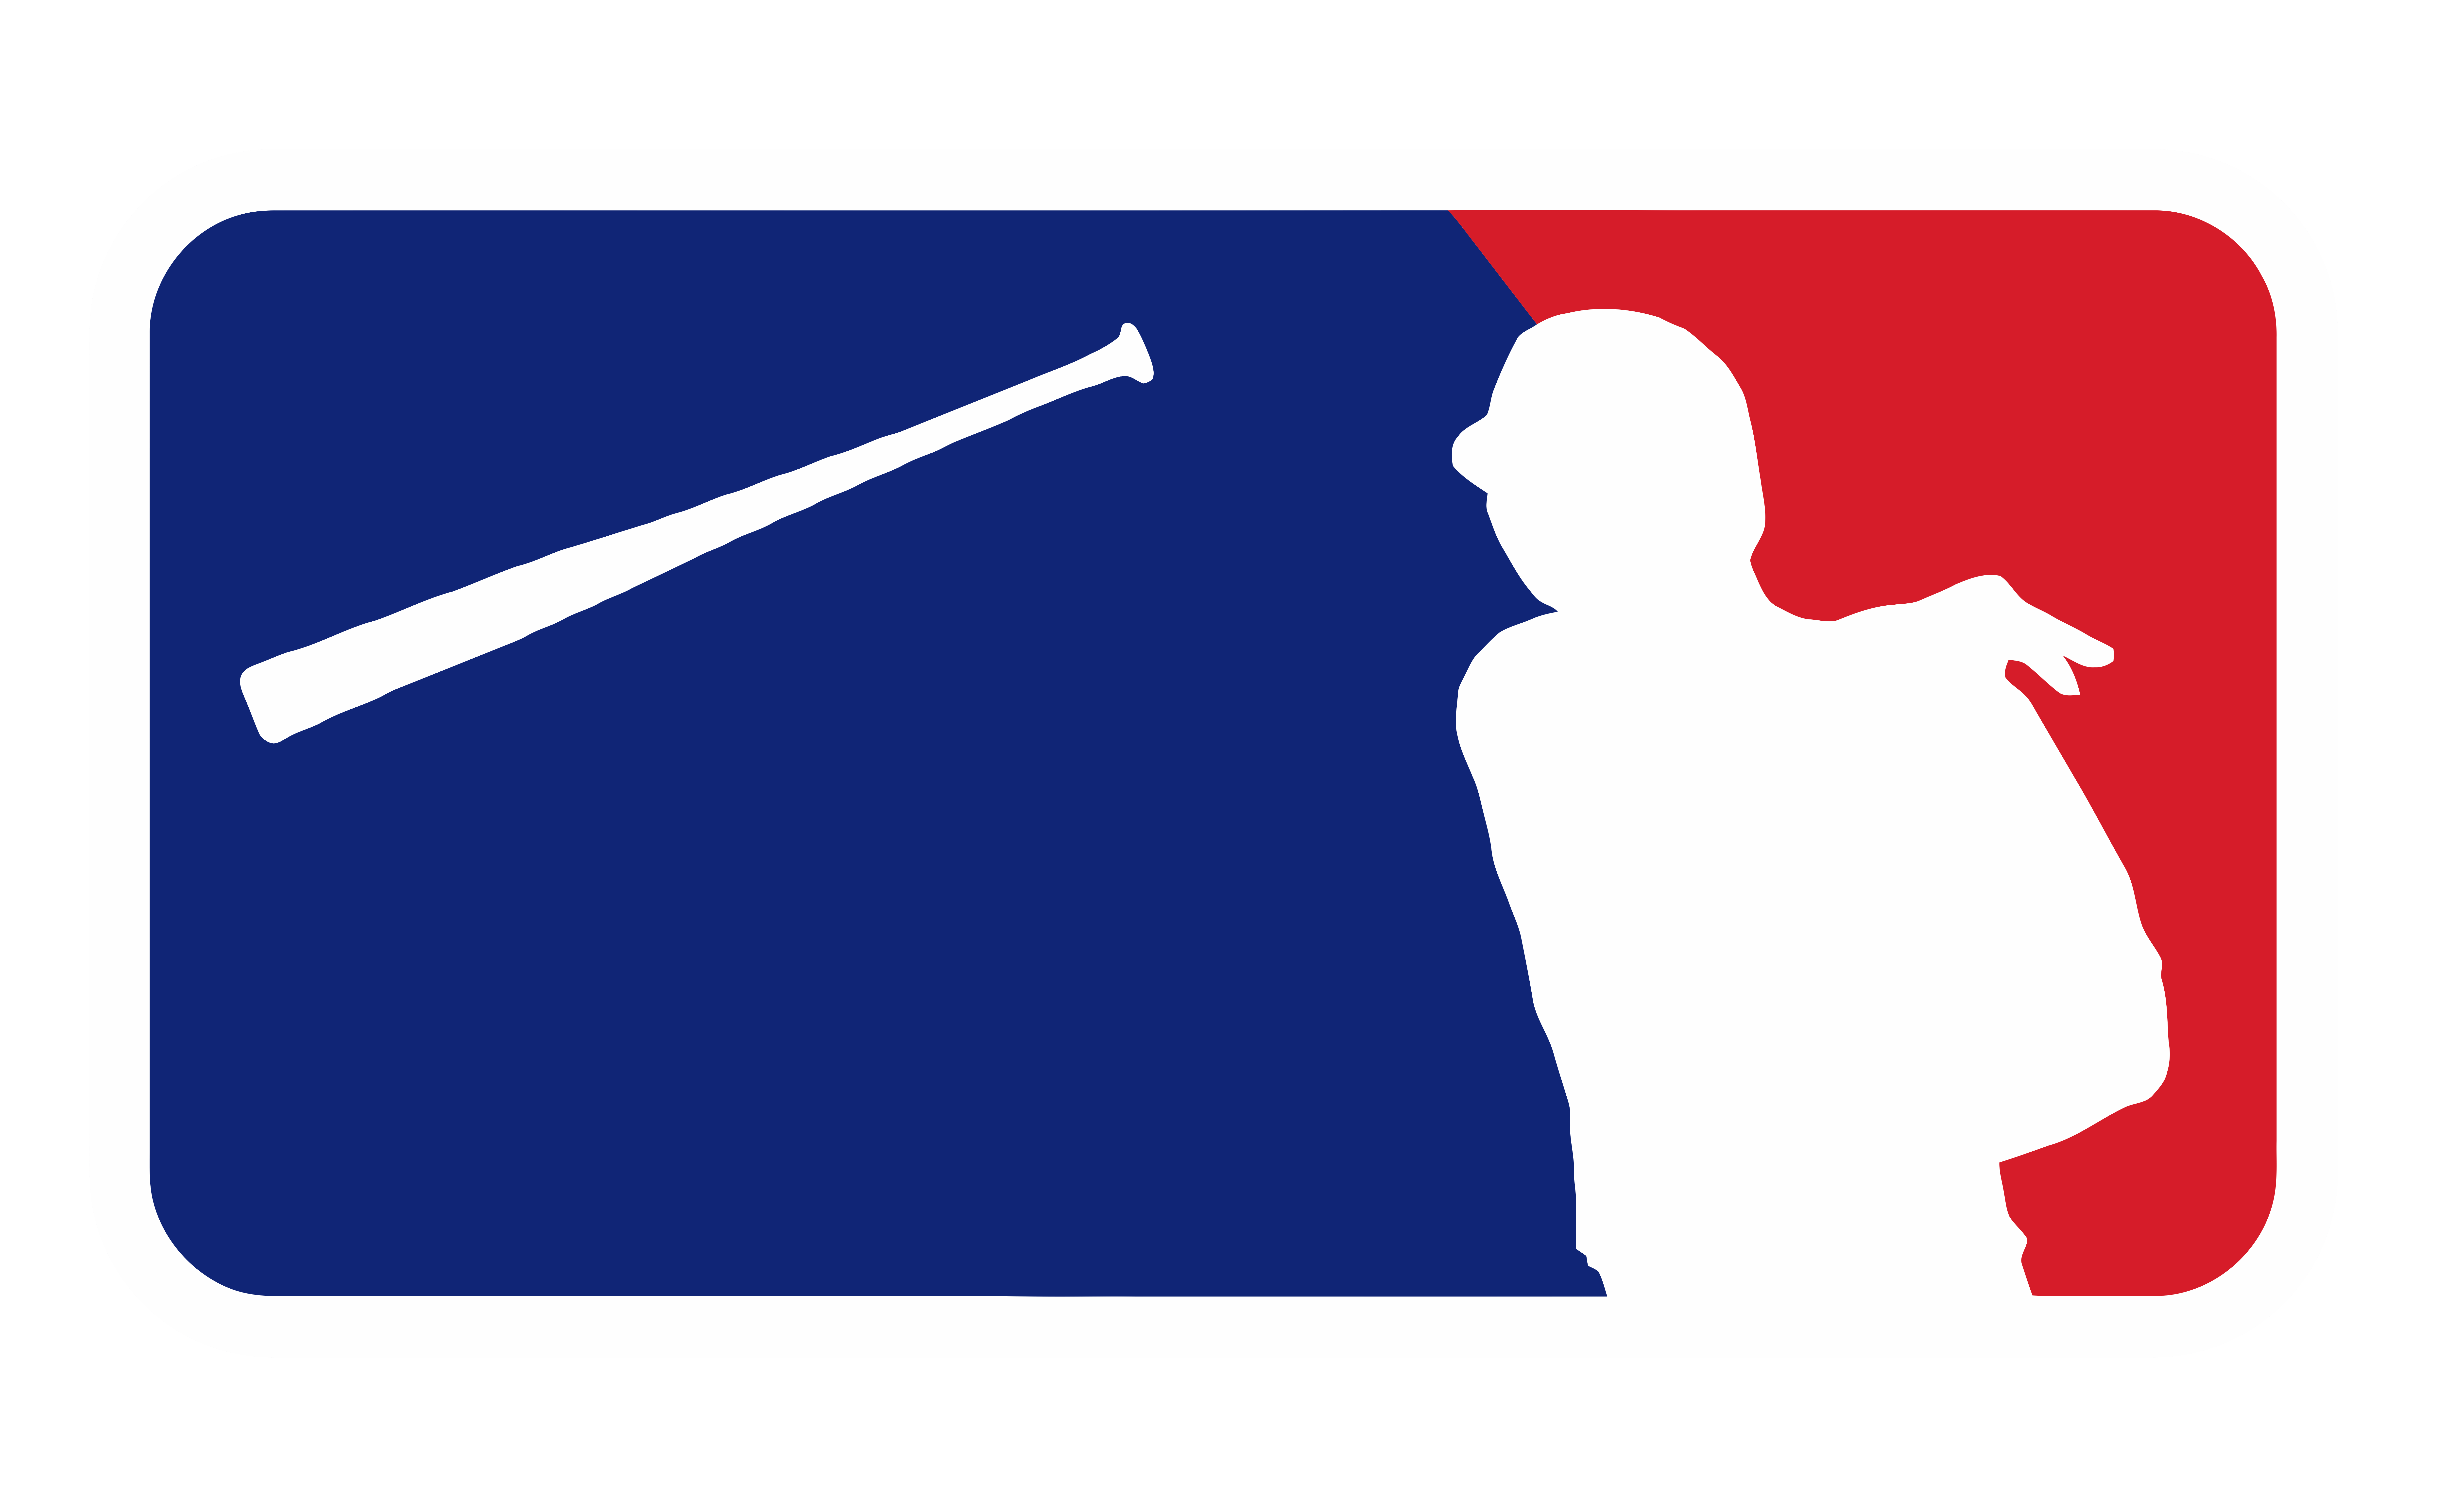 MLB Logo - Bautista bat flip MLB logo : Torontobluejays